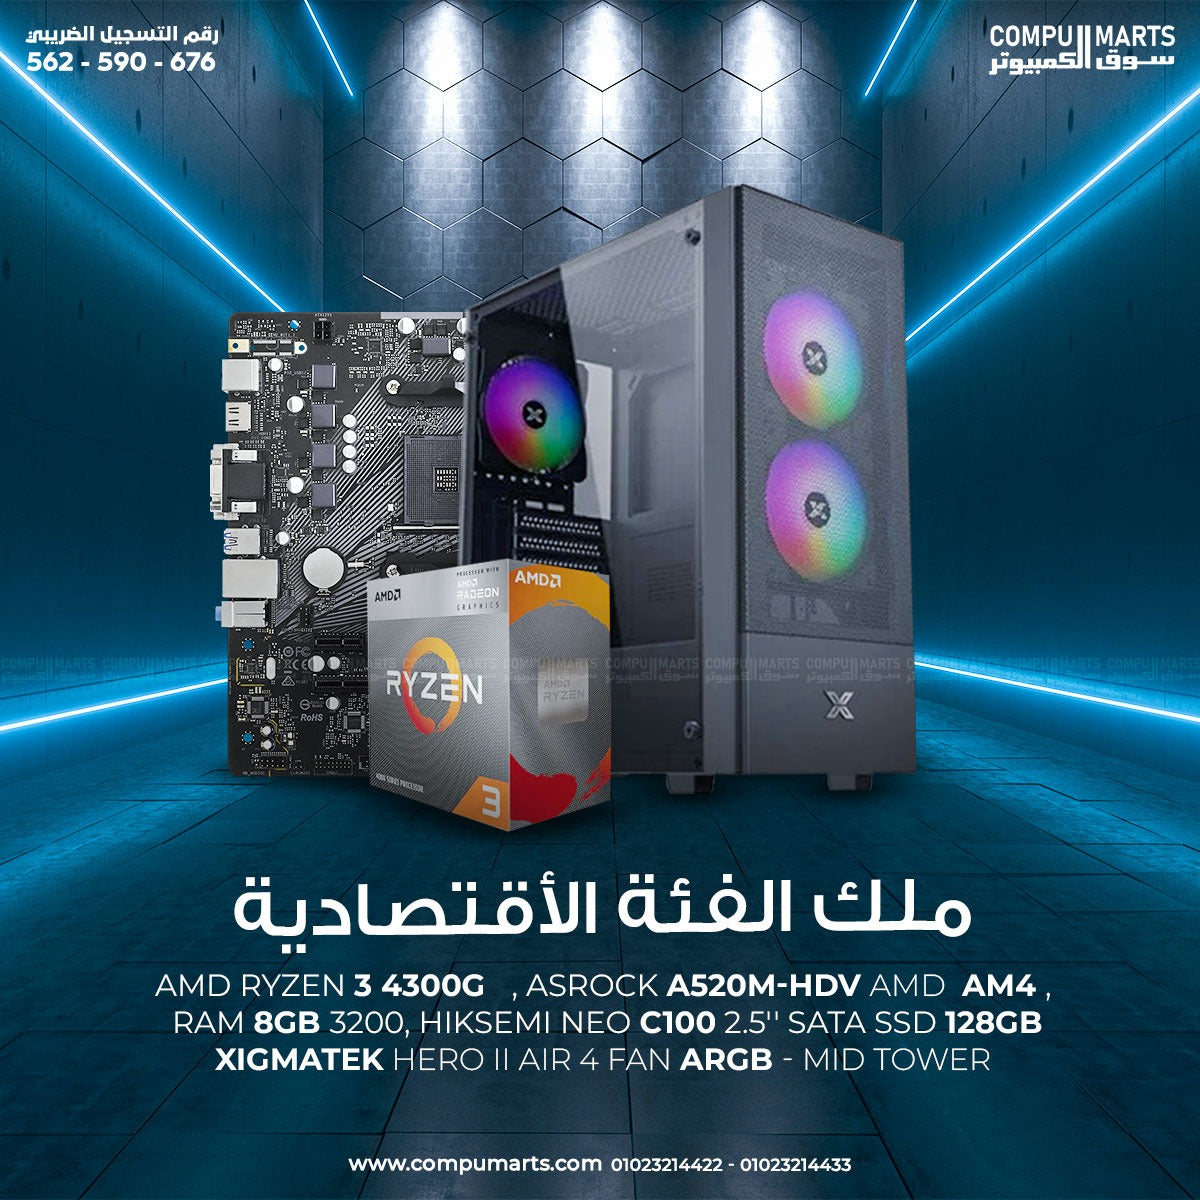 BUNDLE-#-RYZEN-3-4300G-RAM-8GB-SSD-120GB